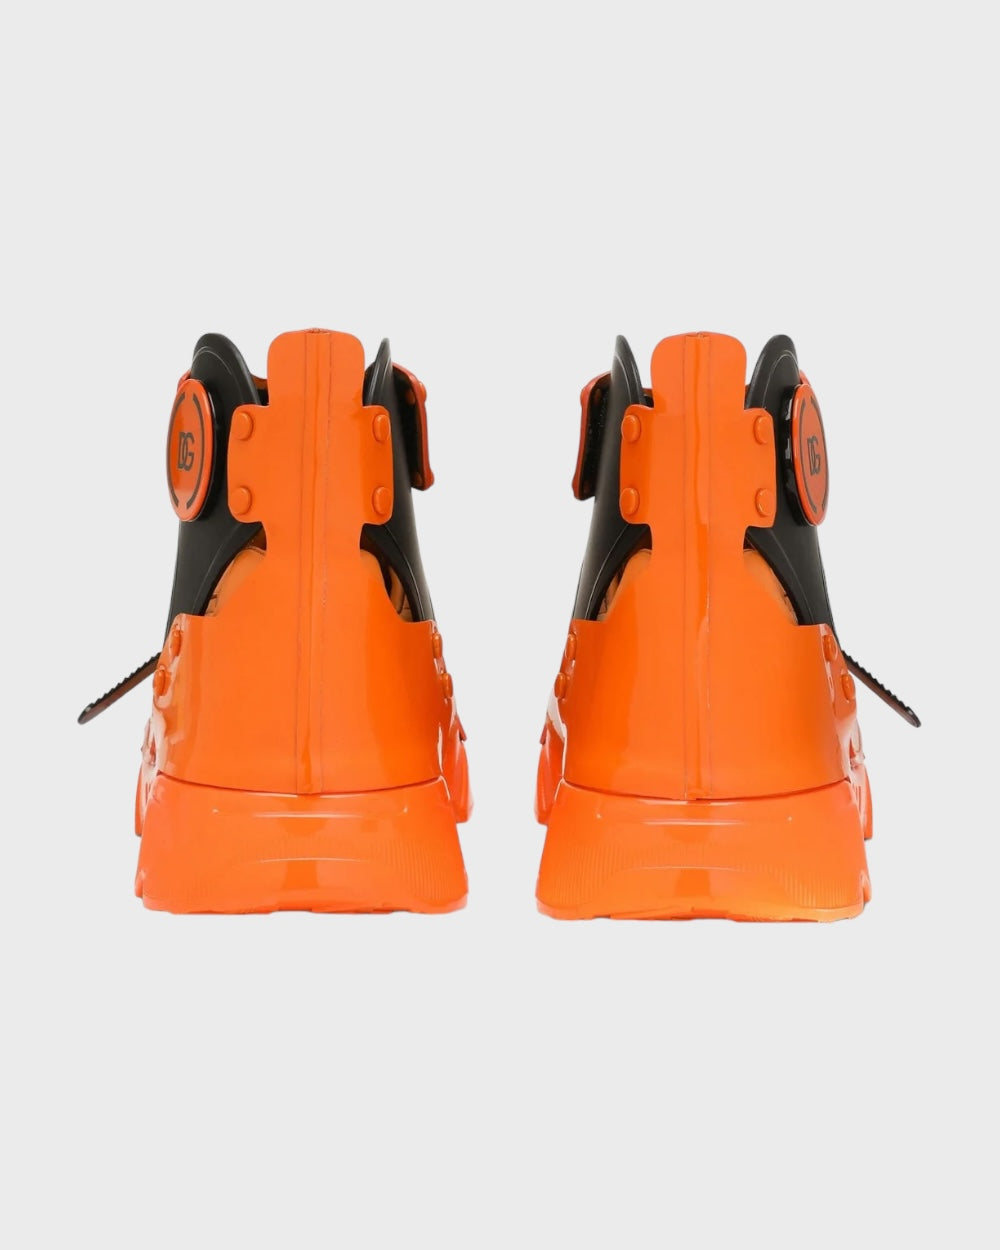 Dolce & Gabbana Oranje Multi Panel Hoge Sneakers